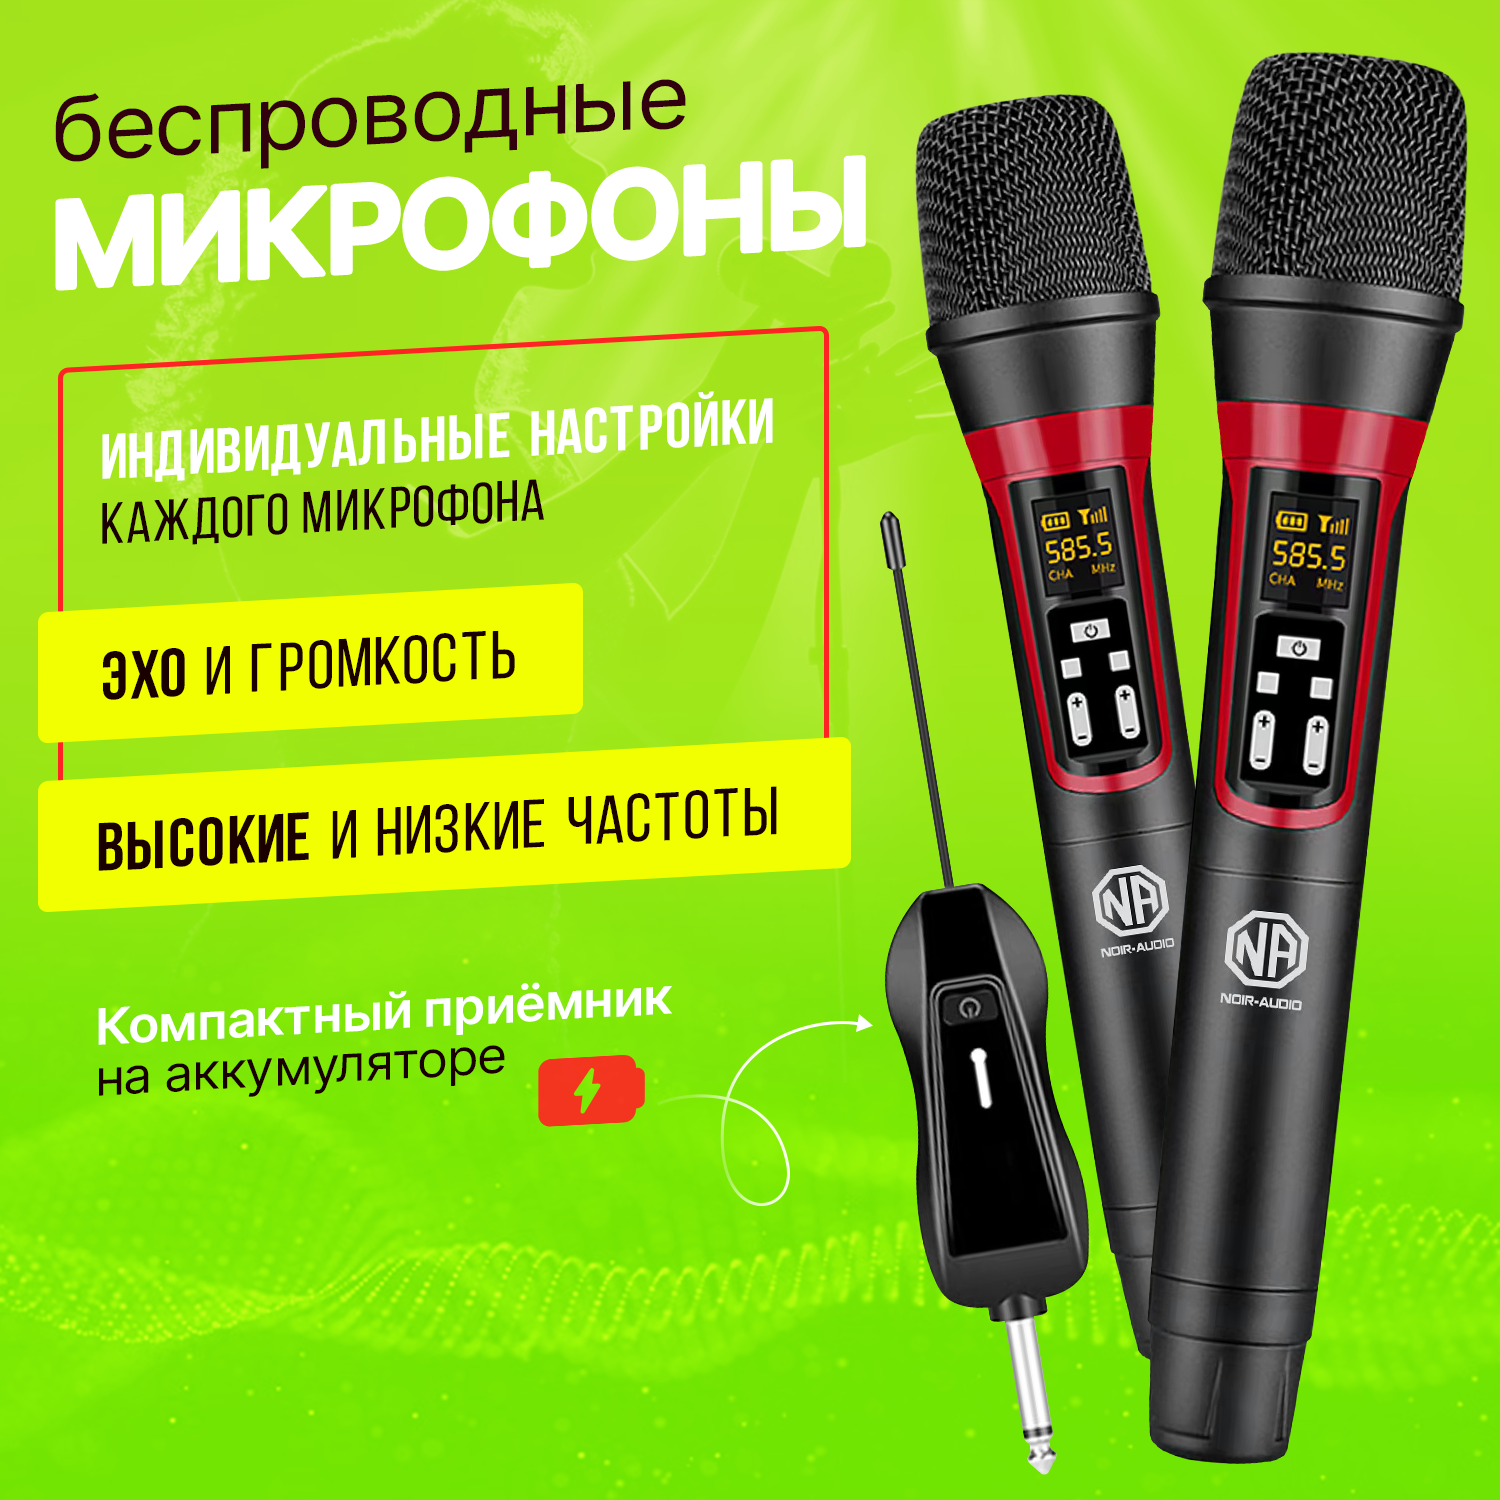 Два беспроводных микрофона для караоке и живого вокала NOIR-audio UR-16 с компактным перезаряжаемым приёмником